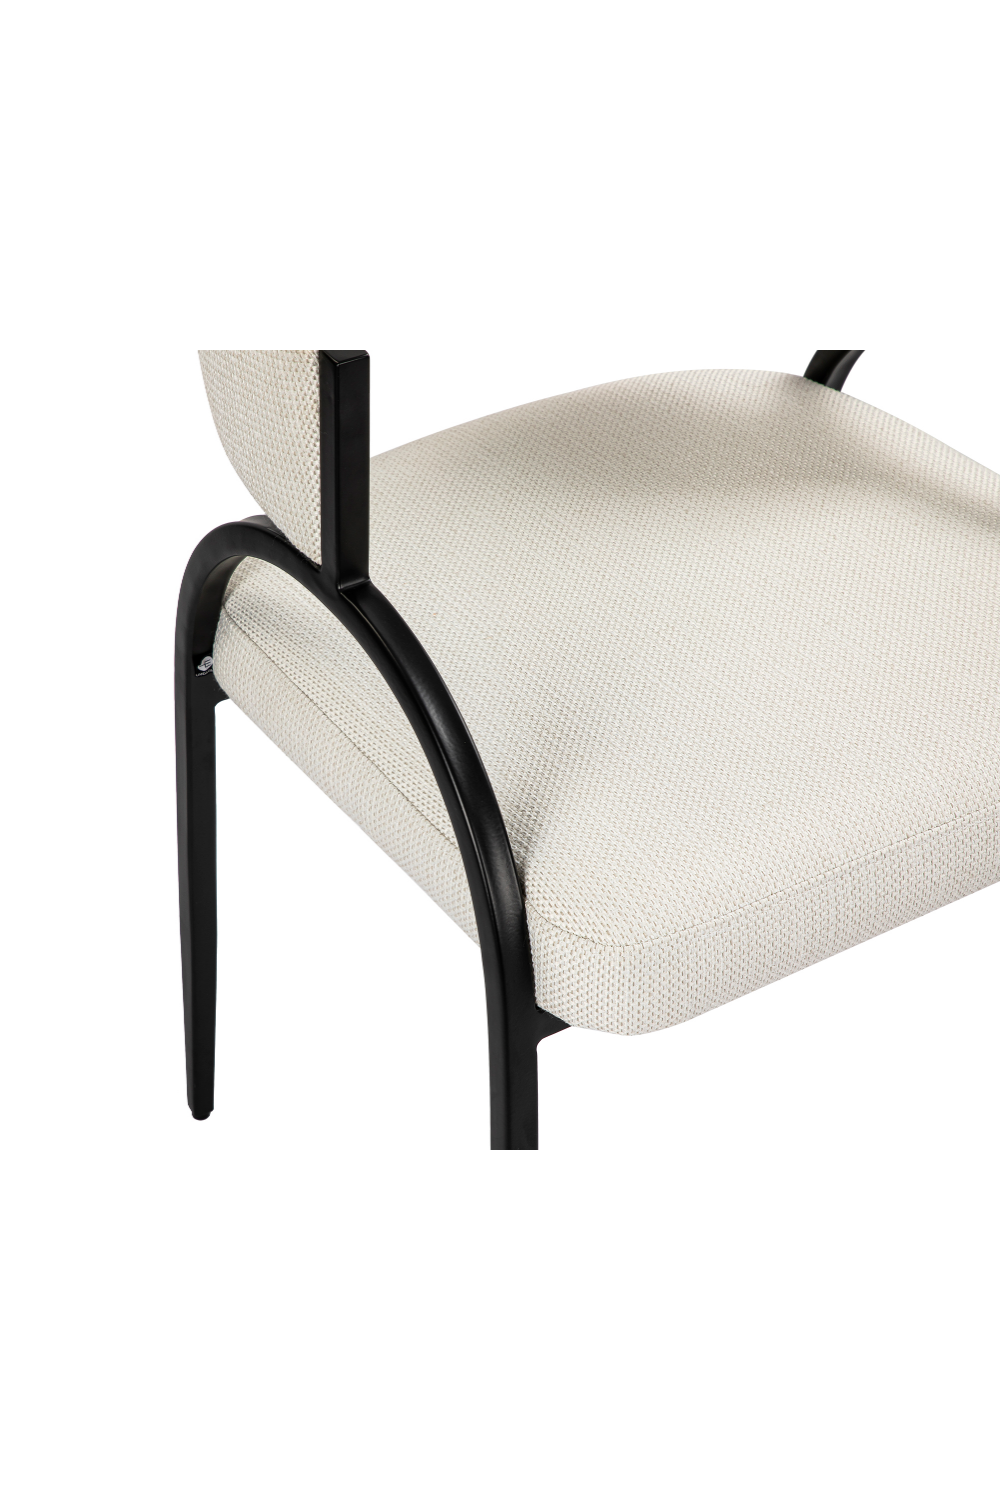 Modern Velvet Dining Chair | Liang & Eimil Pavilion | Oroa.com